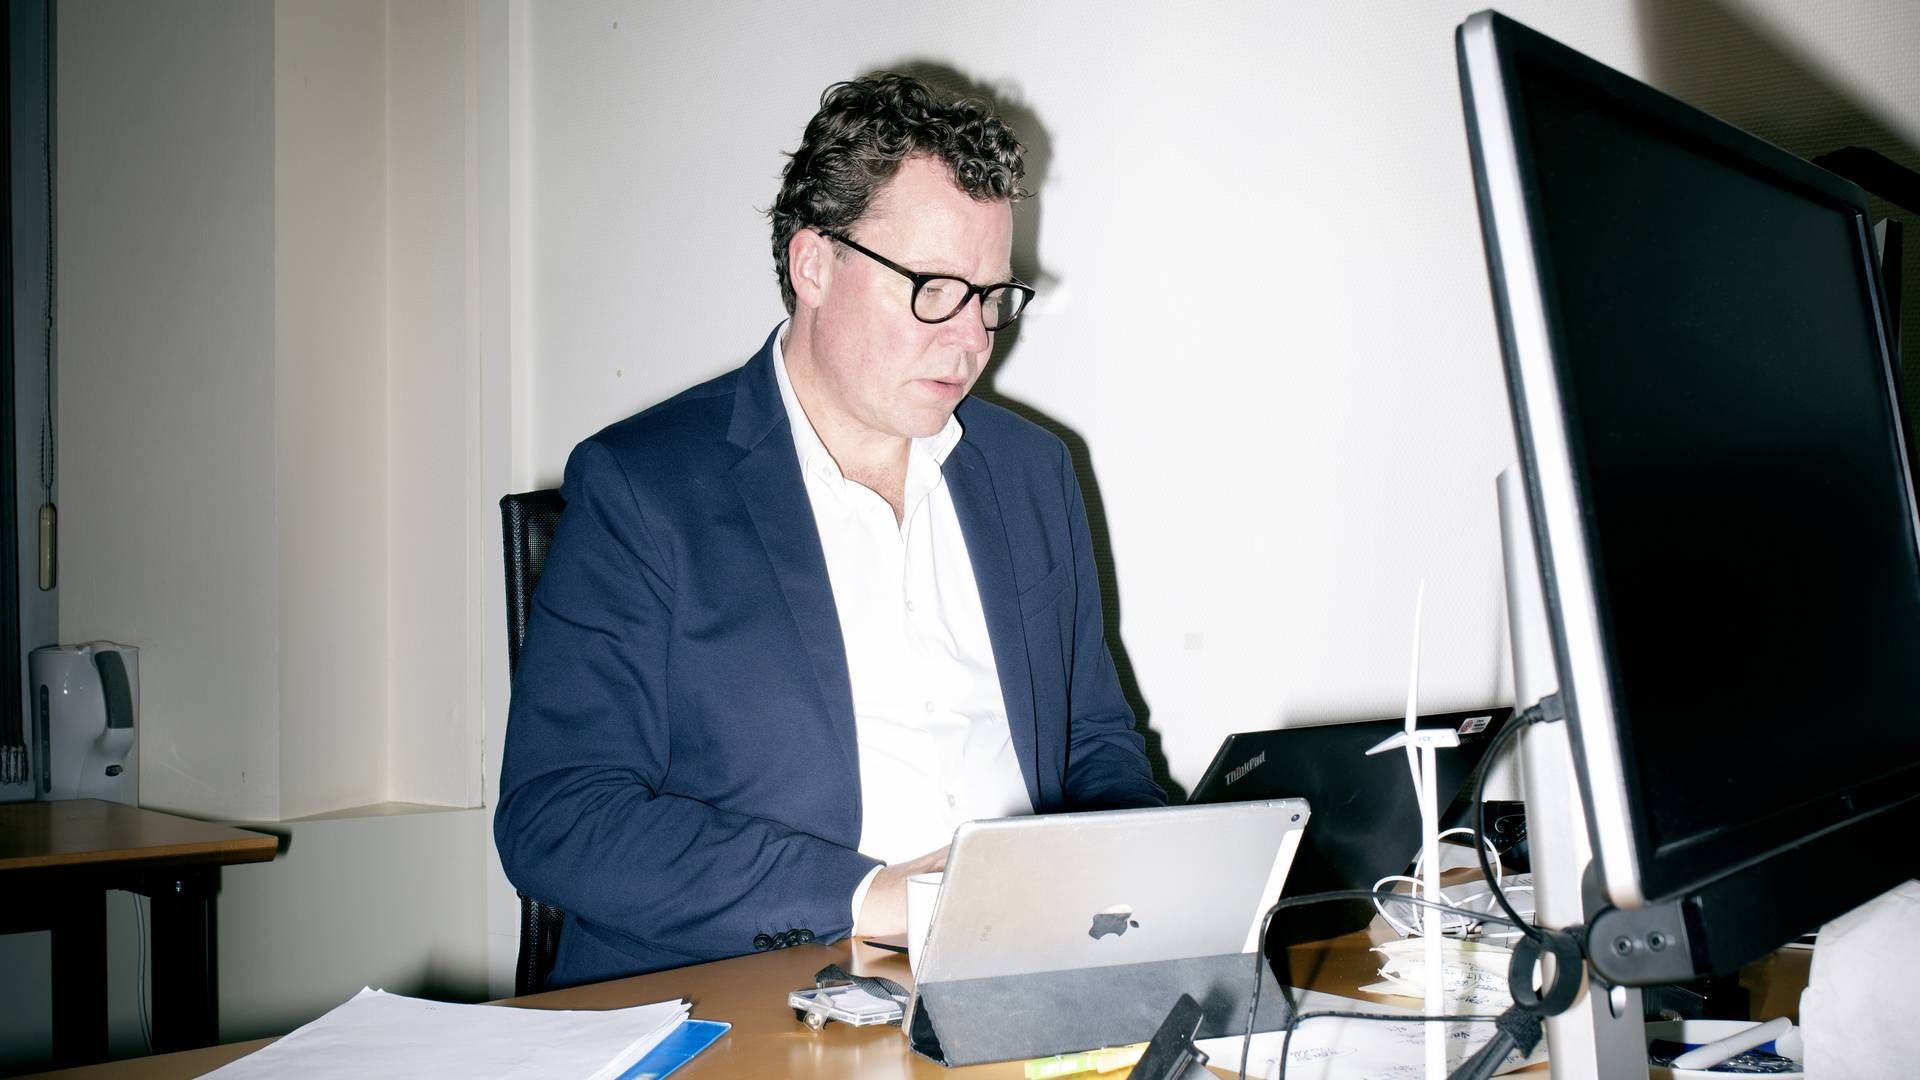 Morten Helveg Petersen har været på begge sider af EU's tech-regulering. Først som repræsentant for danske netmedier, da nye cookie-regler skabte enorm forvirring, og siden 2014 som medlem af Europa-Parlamentet. Faktisk var den dårlige oplevelse med cookie-reglerne med til at skubbe ham i retning af Bruxelles. | Foto: Jens Hartmann